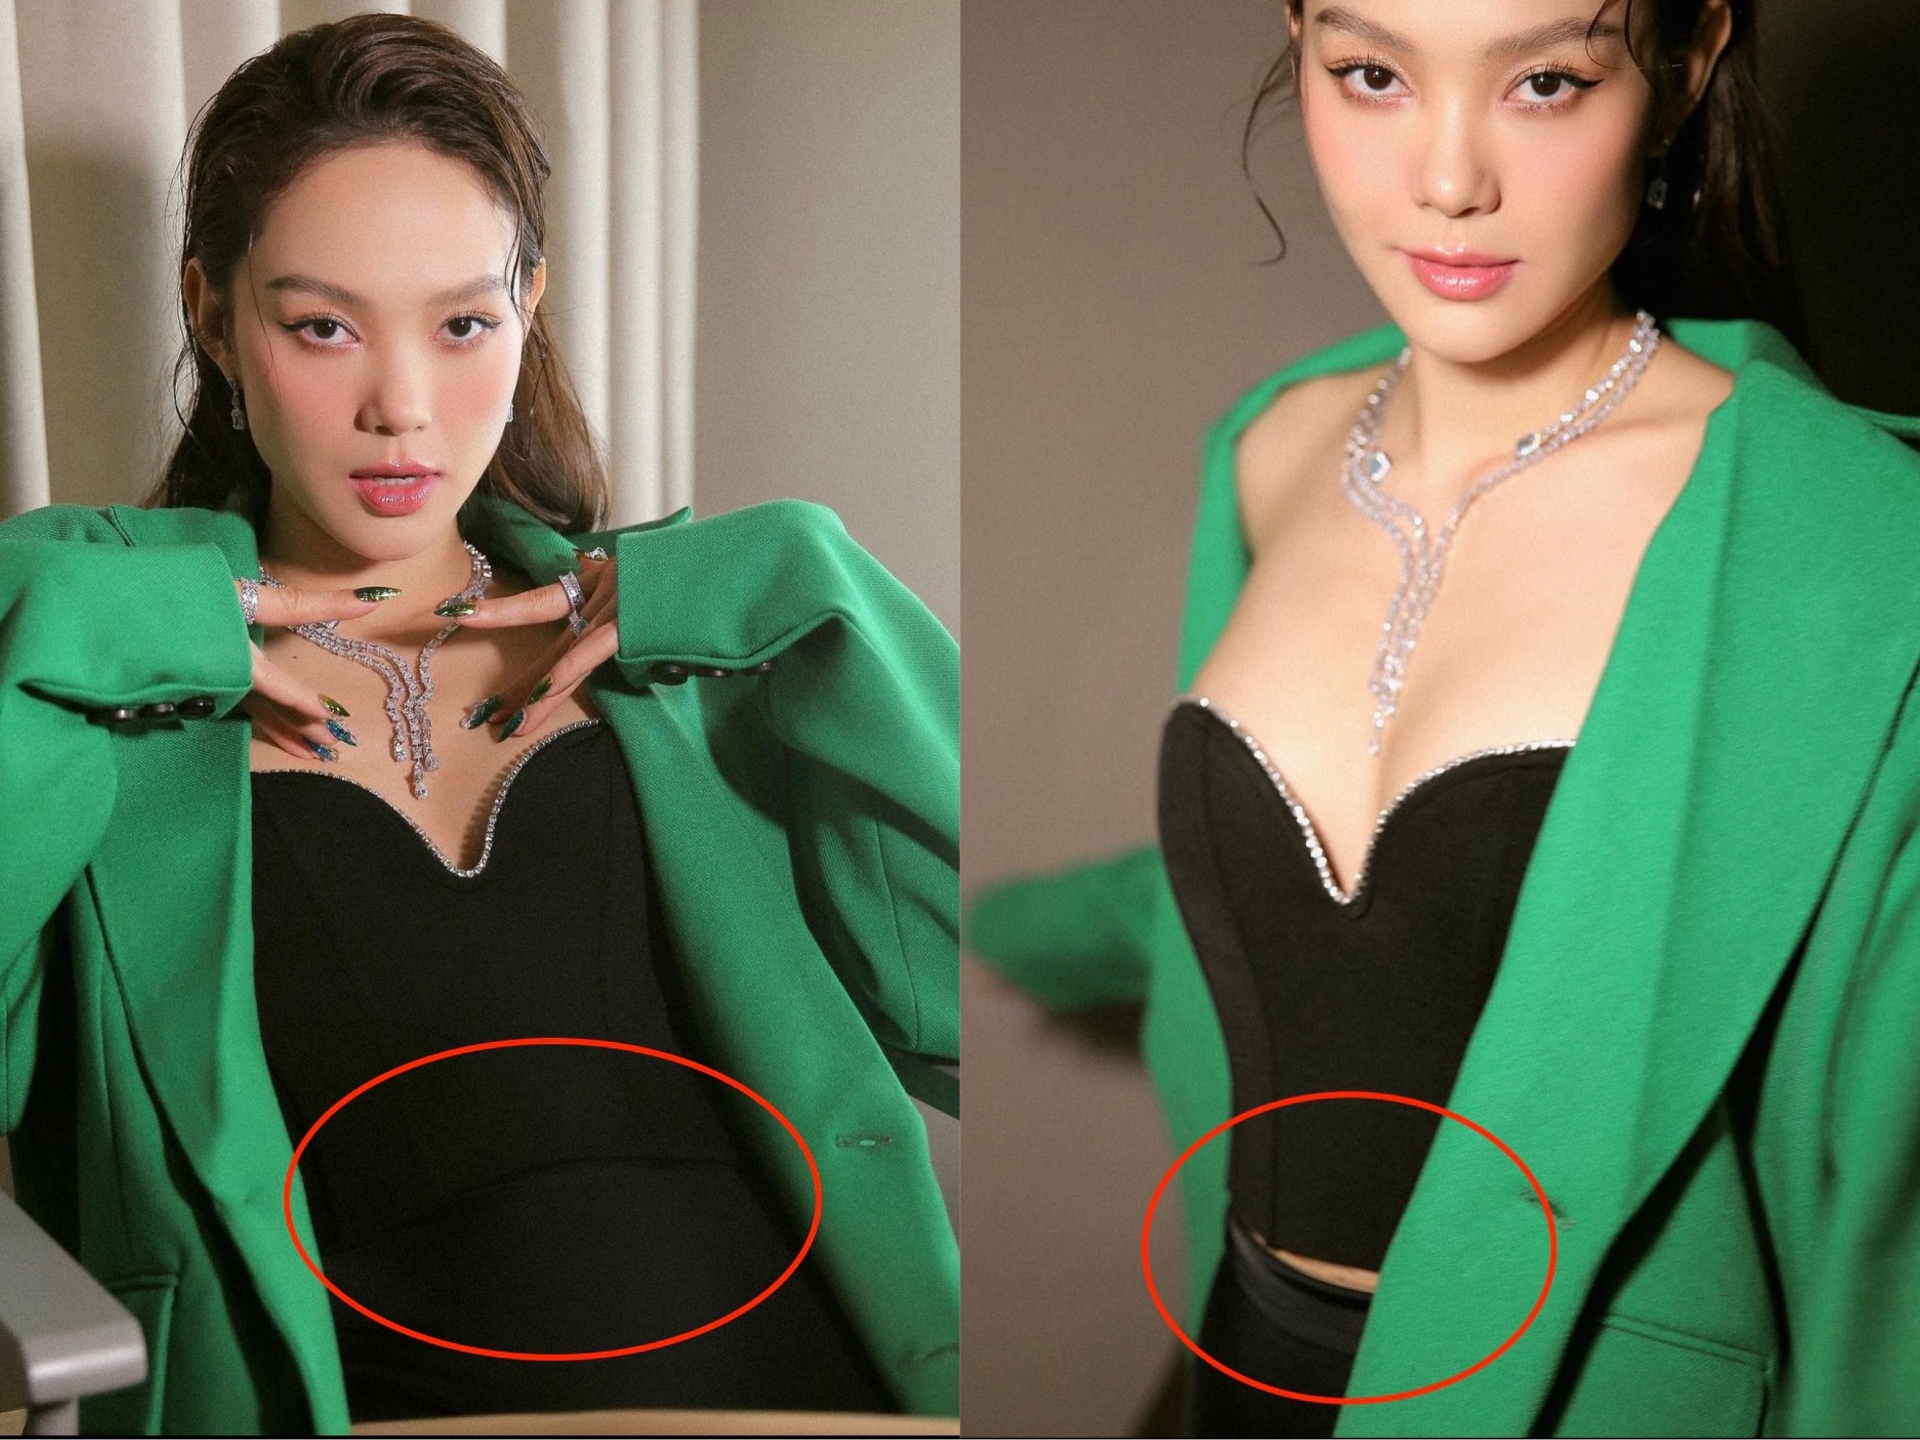 Dù 'lên đồ' sang chảnh nhưng ở một số góc chụp, Minh Hằng để lộ vòng eo có phần hơi to hơn bình thường khiến netizen khá bất ngờ.